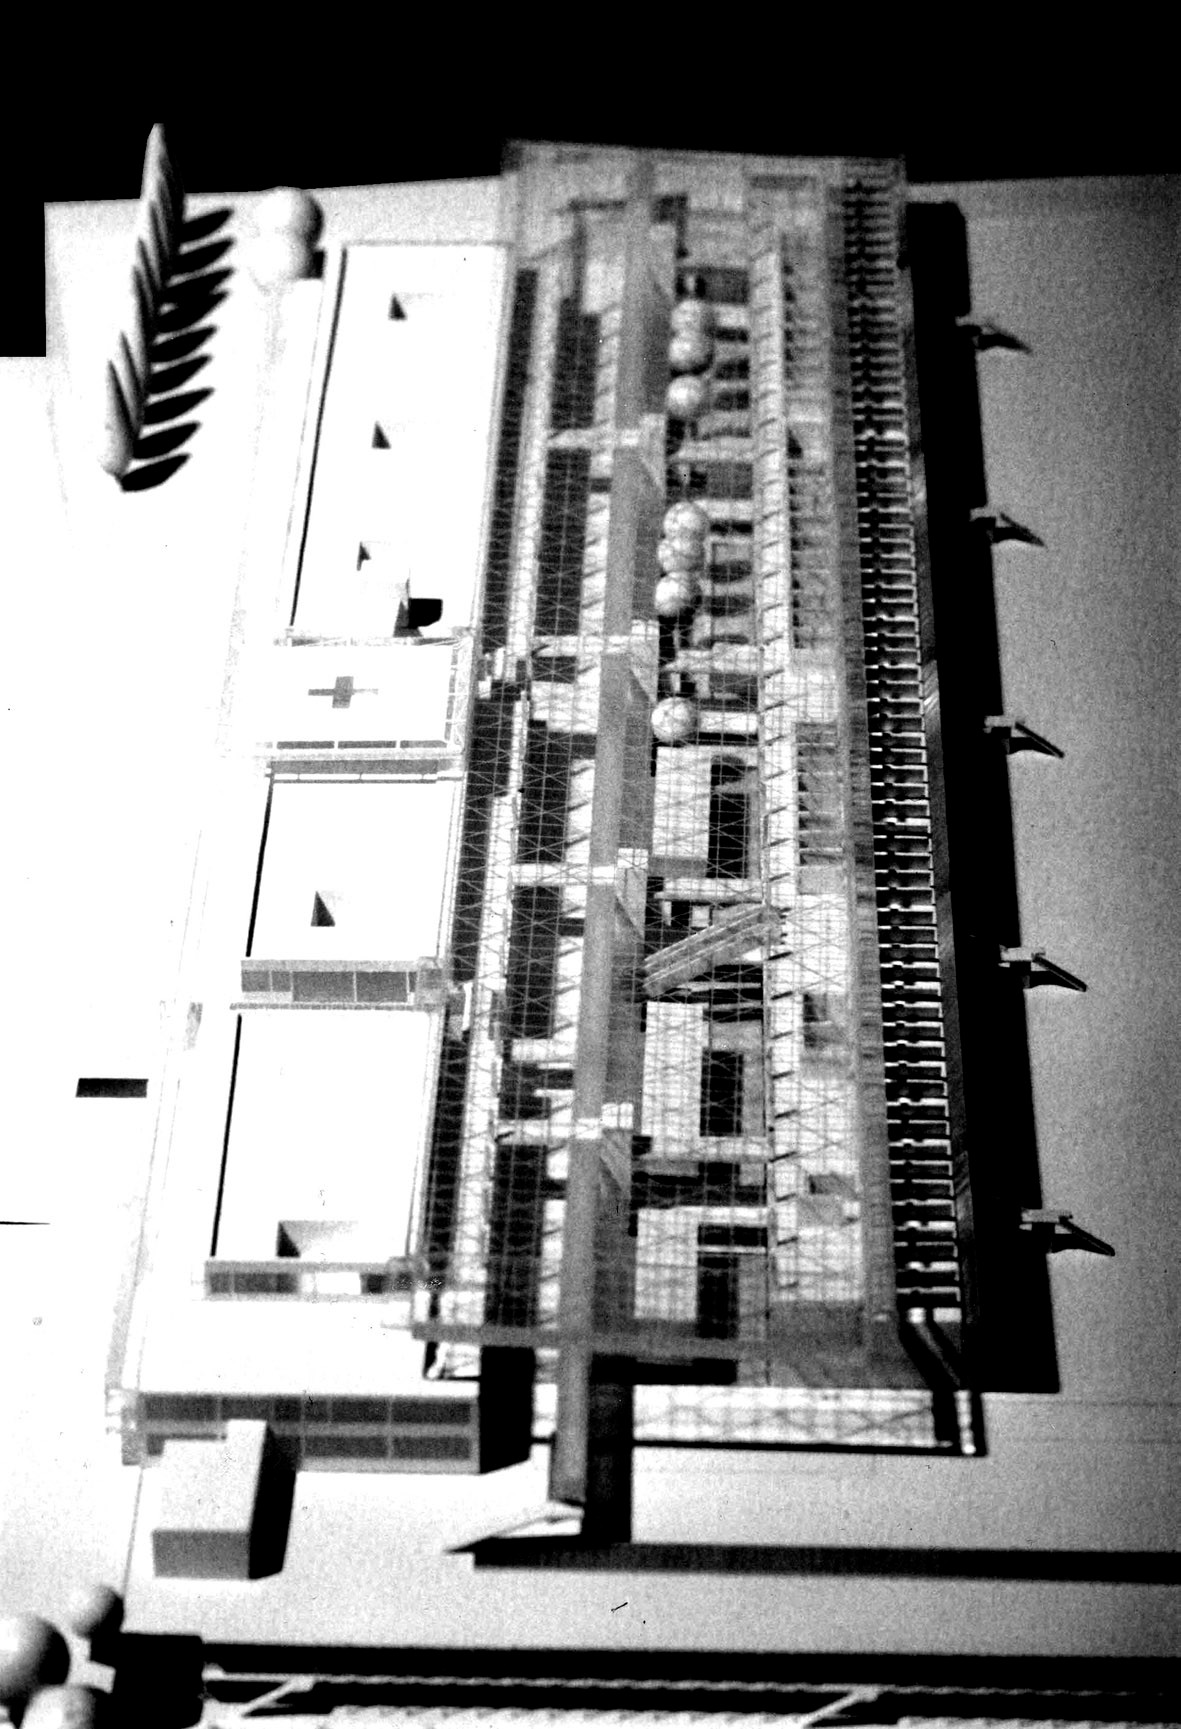 <p>© RUNSER / PRANTL architekten, Wagner Jauregg Krankenhaus, 4020 Linz, Oberösterreich, Österreich, Wettbewerb, Ankauf, 1993, Spital, Krankenhaus, Schule</p>